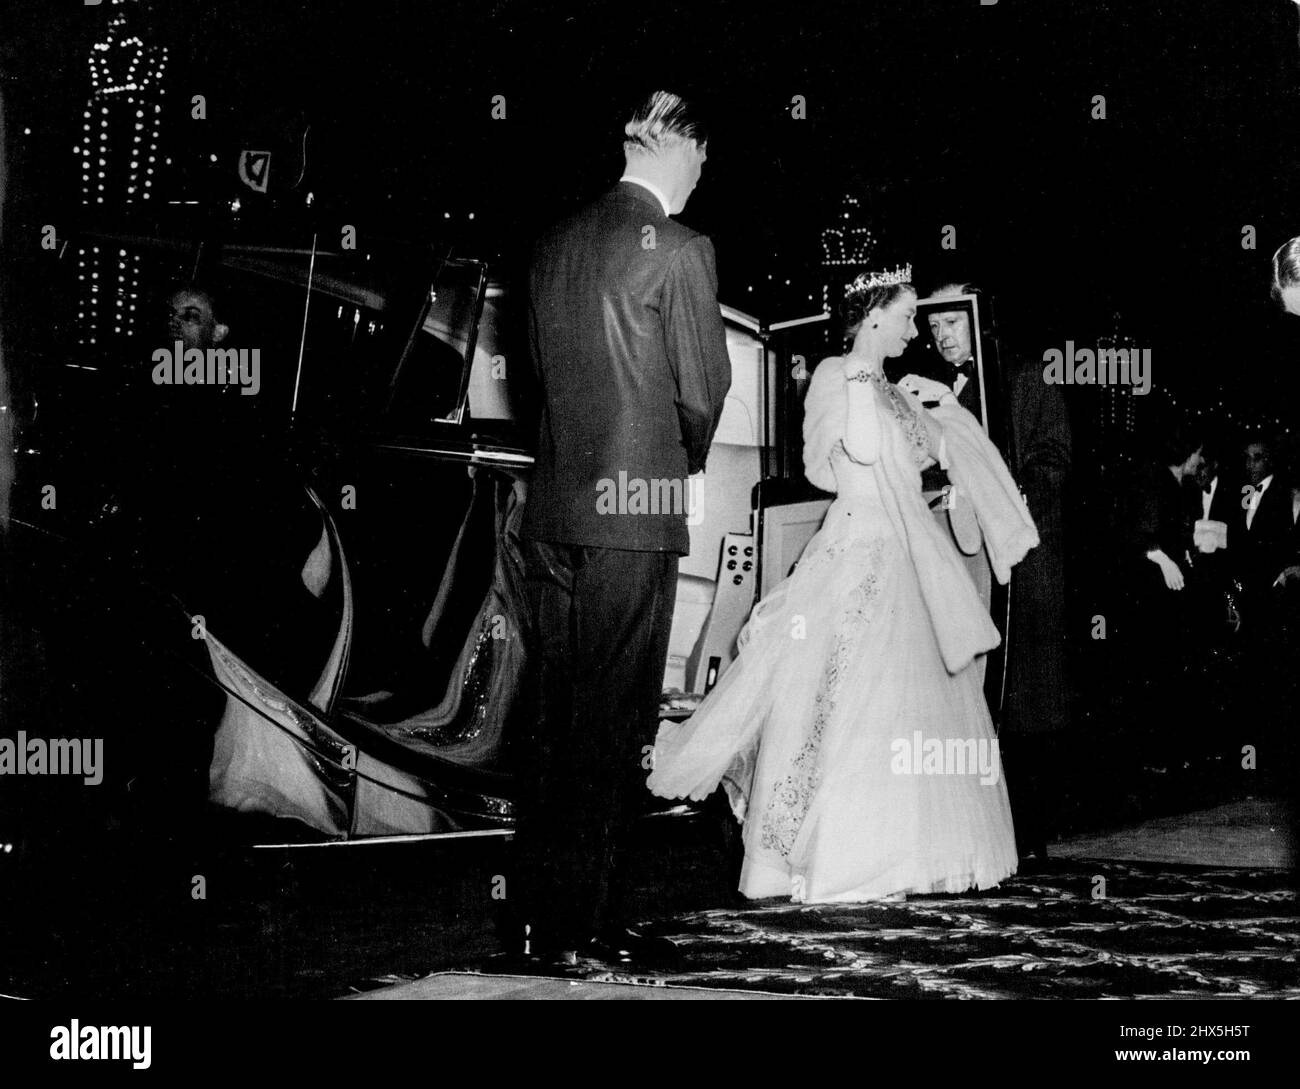 La Reine au milieu des lumières de Blackpool. Sur fond de couronnes formées par les célèbres illuminations de Blackpool, la reine, resplendissant dans une robe en filet blanche brodée d'argent et un circlet étincelant (tiara en bijoux), arrive à l'Opéra de Blackpool pour la Royal Variety Performance de la nuit dernière. Il s'agissait du premier spectacle Variety Command à avoir lieu à l'extérieur de Londres et a été organisé dans le cadre de la visite royale actuelle du Lancashire. 14 avril 1955. (Photo de Reuterphoto). Banque D'Images